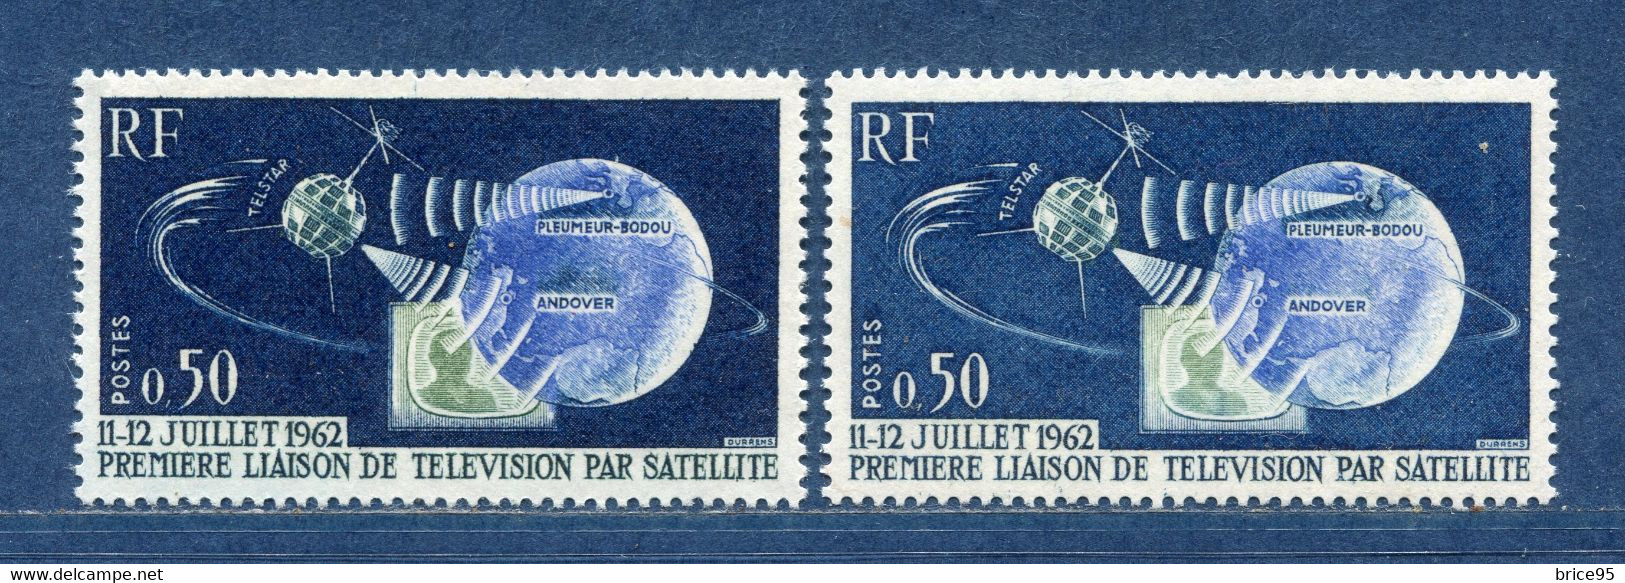 ⭐ France - Variété - YT N° 1361 - Couleurs - Pétouilles - Neuf Sans Charnière - 1962 ⭐ - Unused Stamps